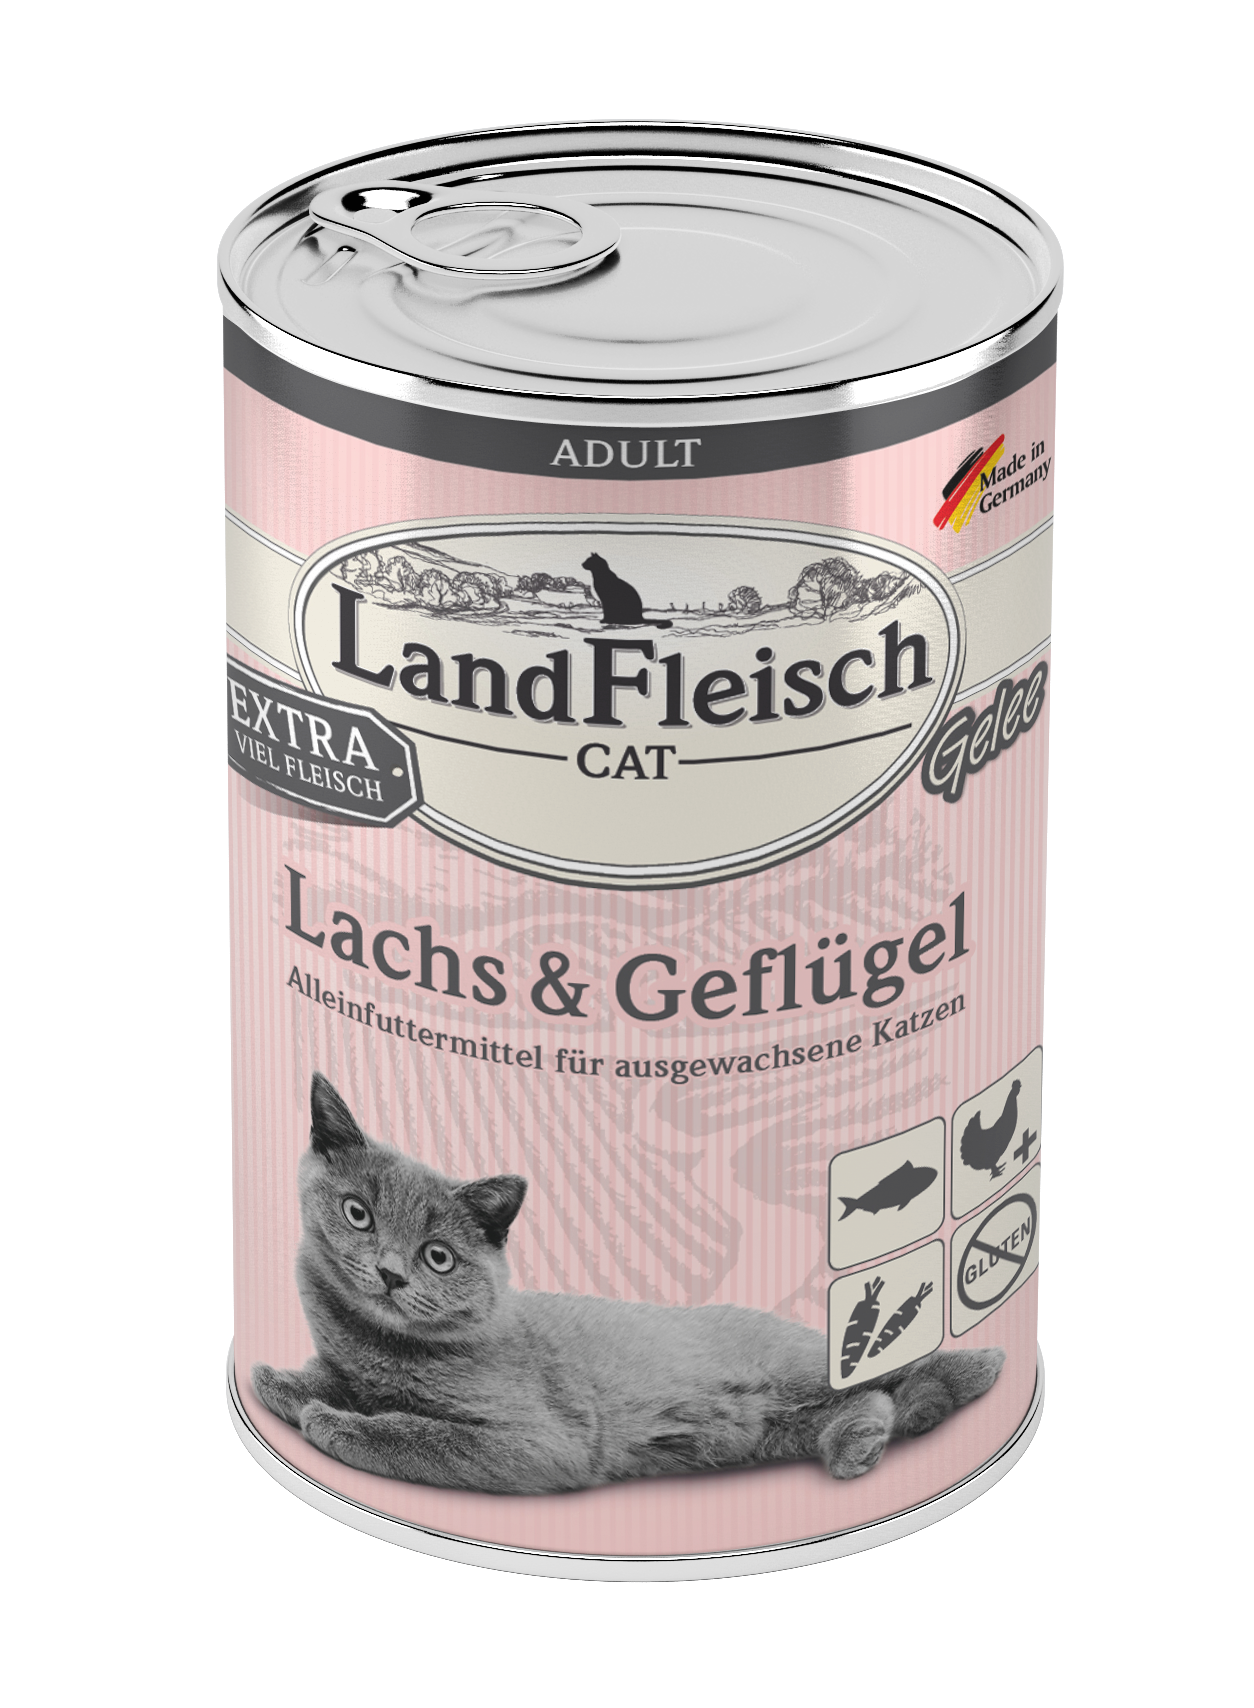 LandFleisch Cat Adult Gelee Lachs & Geflügel 400g